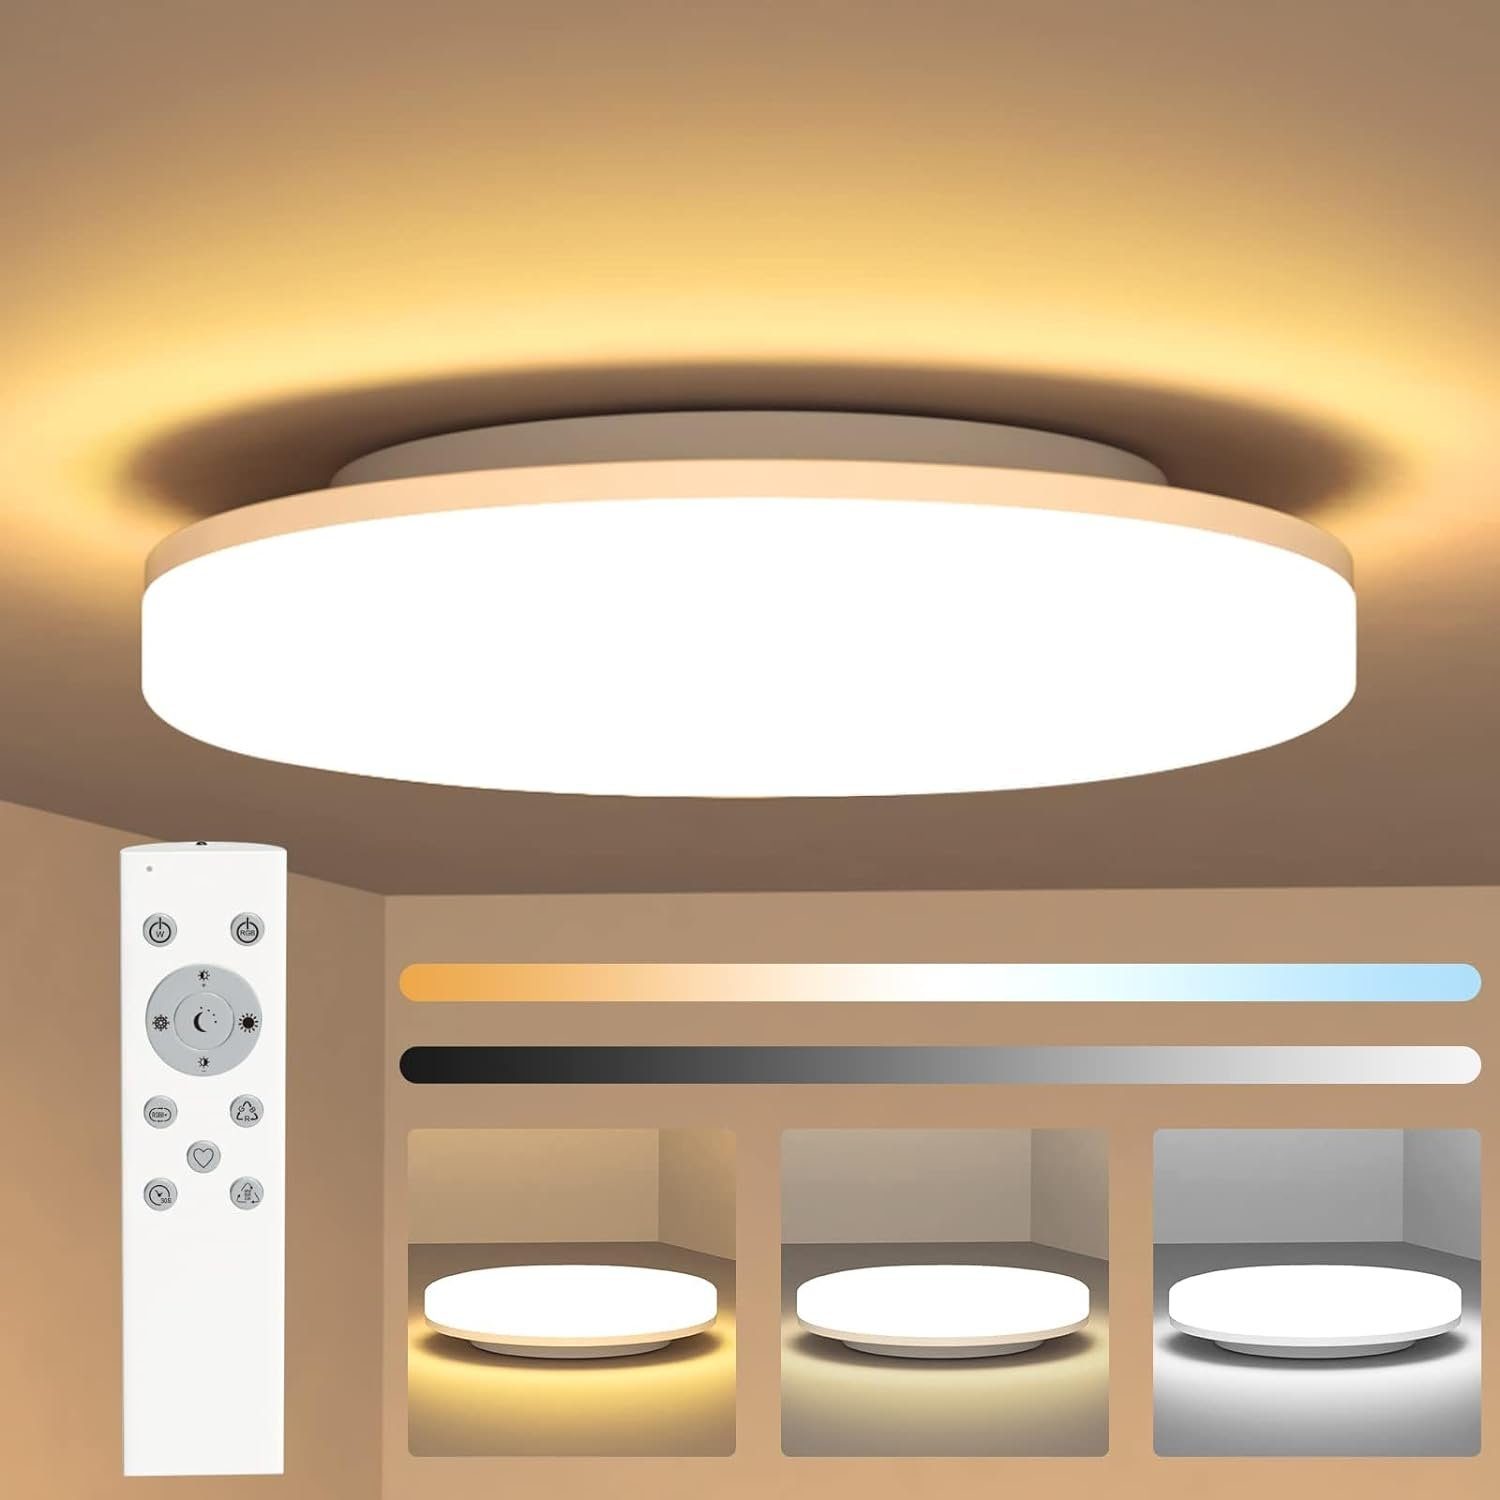 Nettlife LED Panel Deckenlampe Rund Badezimmer Decke 24W Badlampe 27*4.8CM, IP54 Wasserdicht, LED fest integriert, Warmweiß Neutralweiß Kaltweiß, Dimmbar mit Fernbedienung, Schlafzimmer Flur Küche Wohnzimmer Balkon